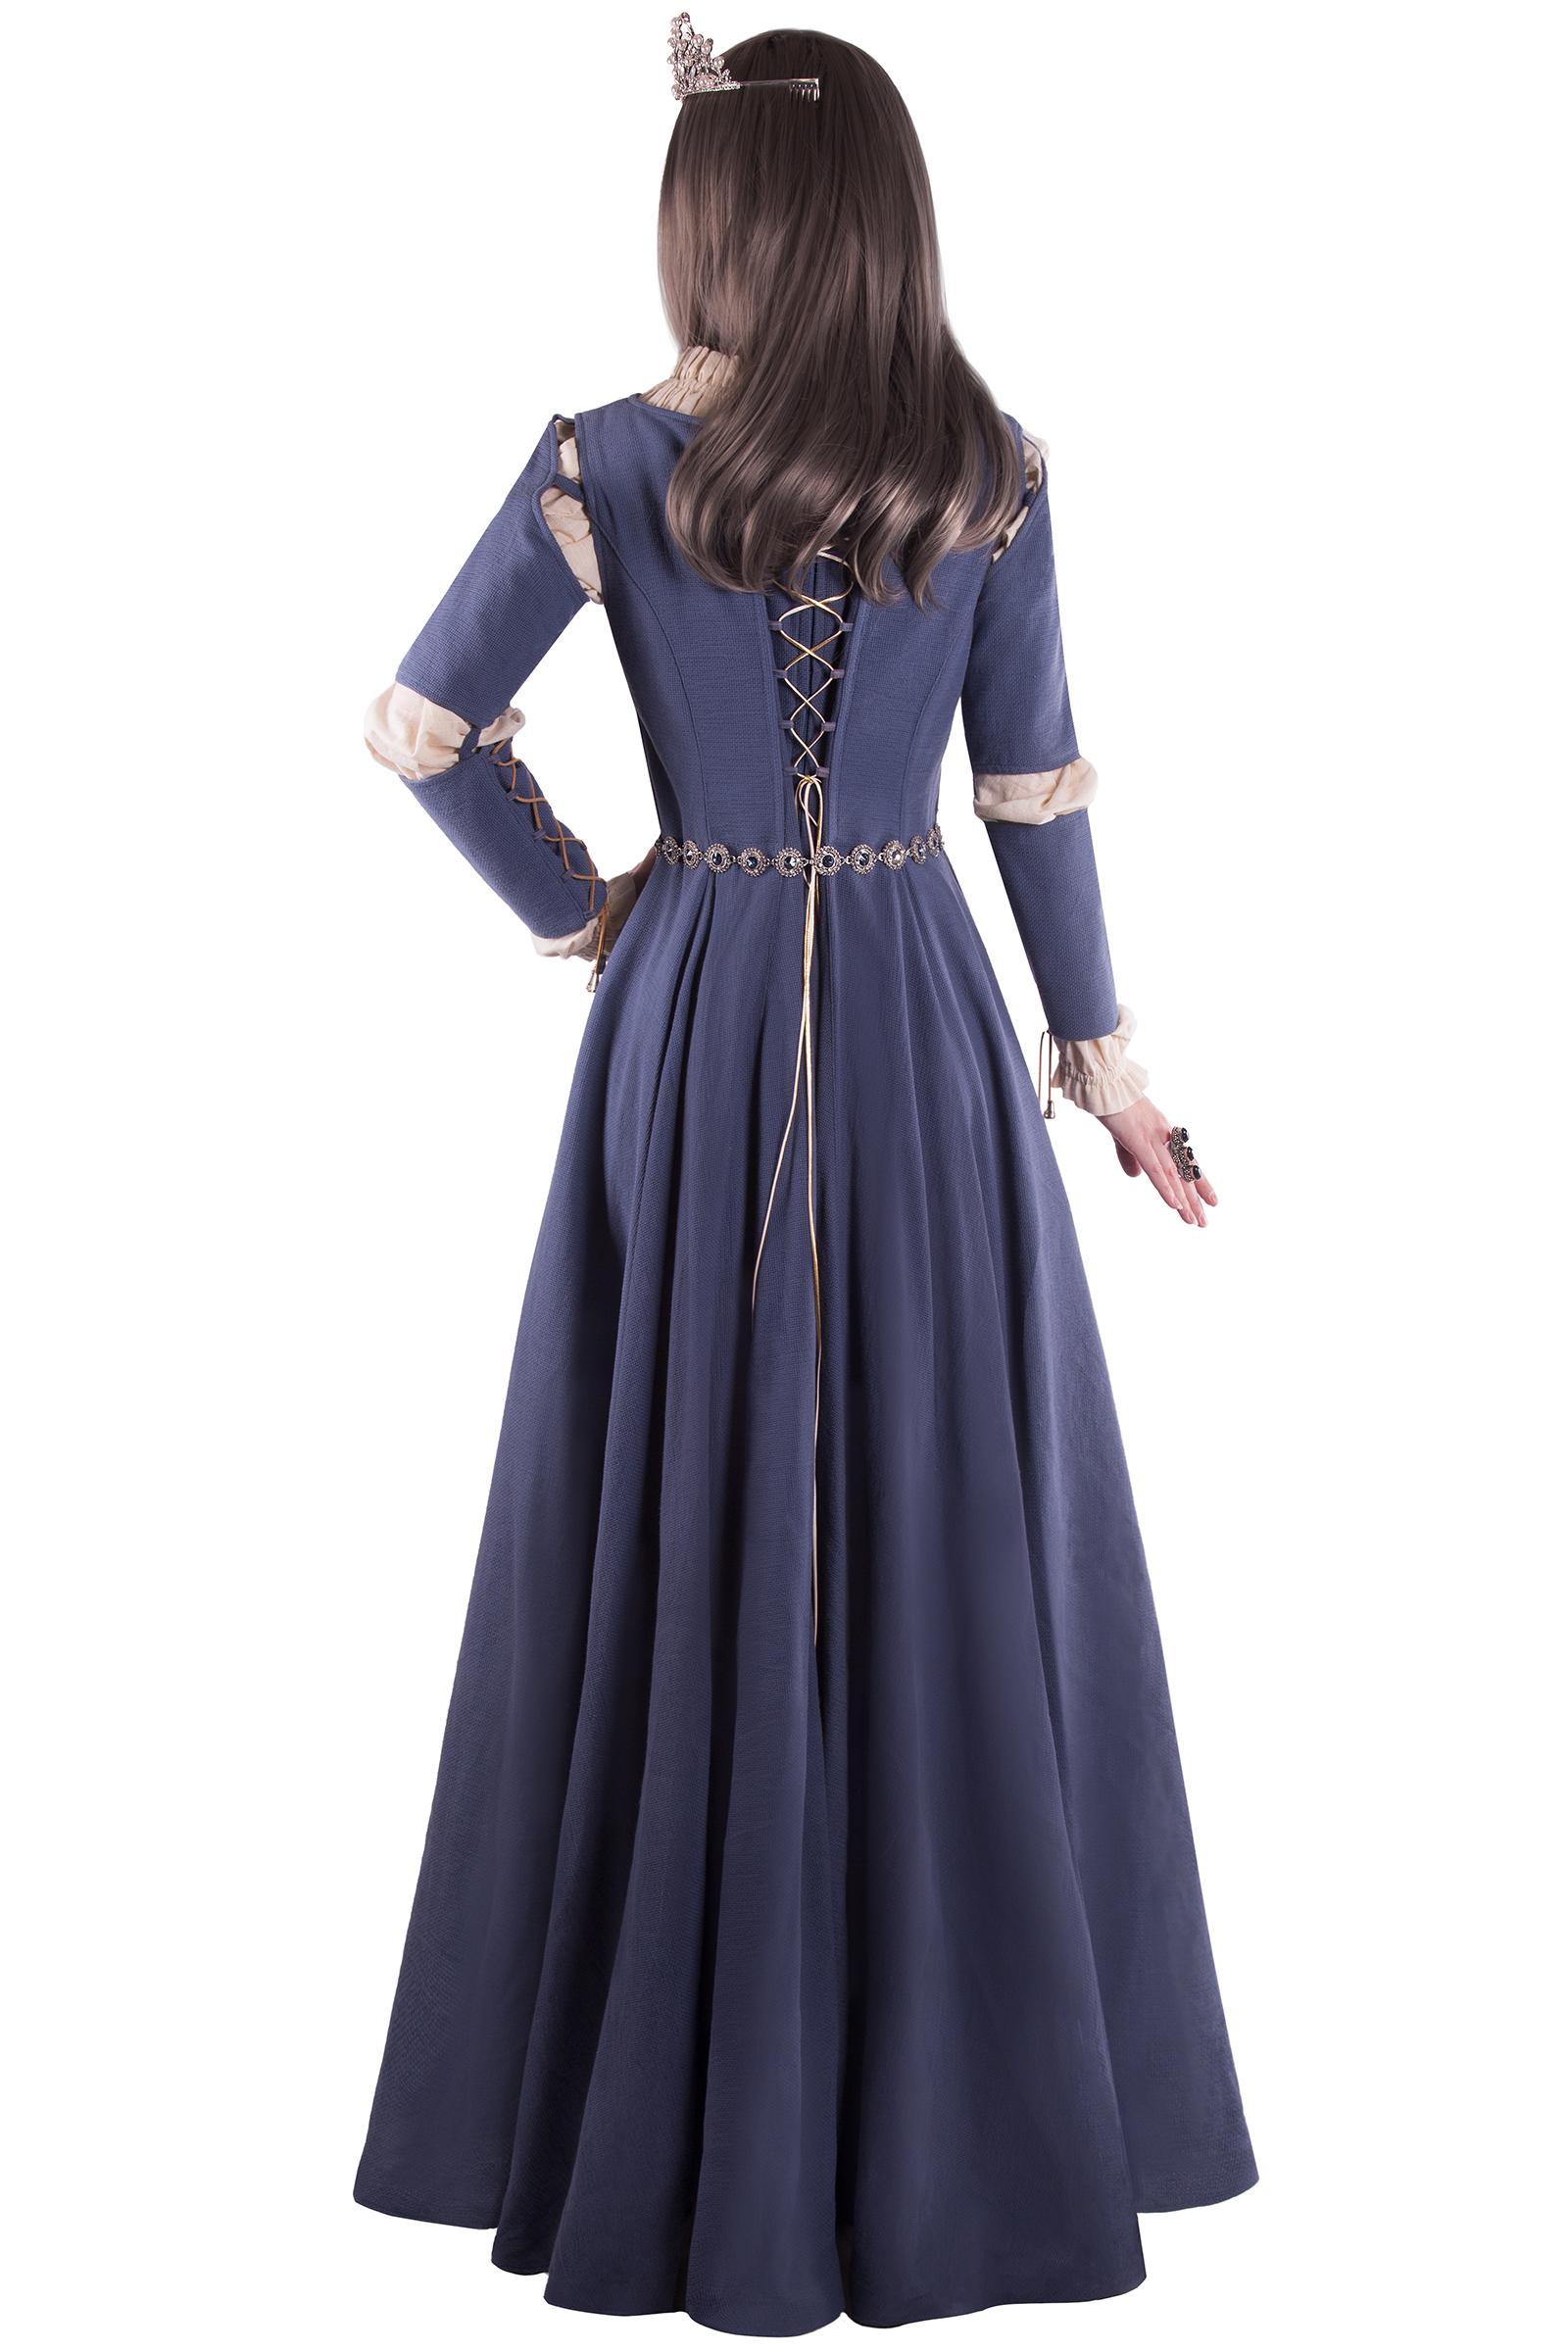 средневековое платье моделей фотографии